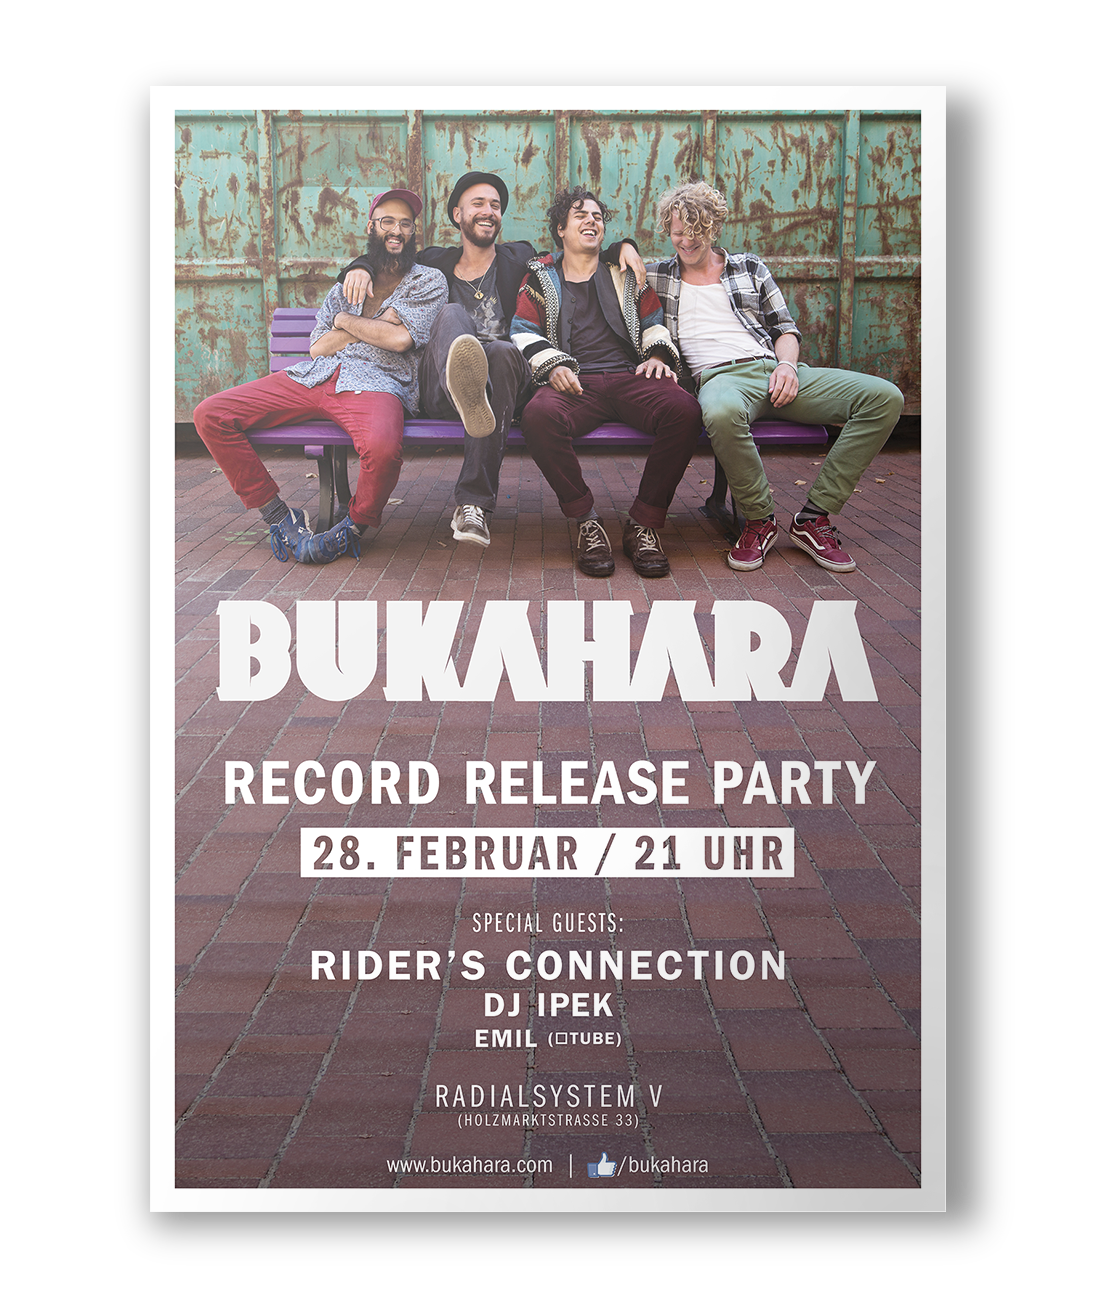 Bukahara band Strange Delight Album cd cover vinyl poster music promotion